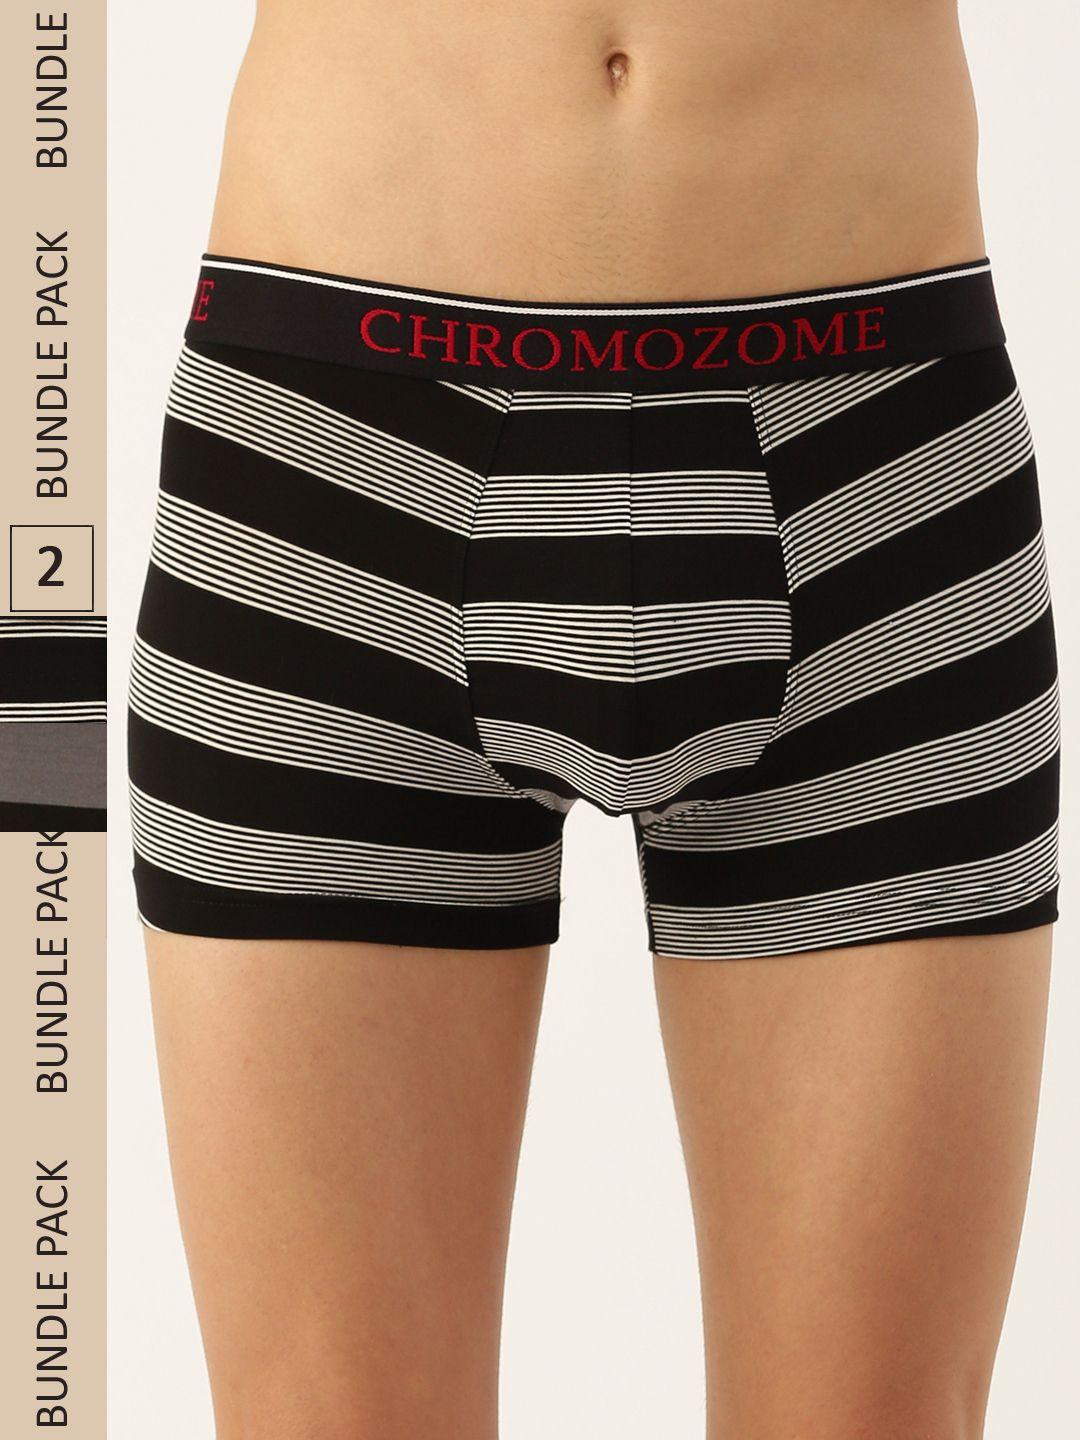 chromozome men pack of 2 ultra-premium striped trunks 8902733643382